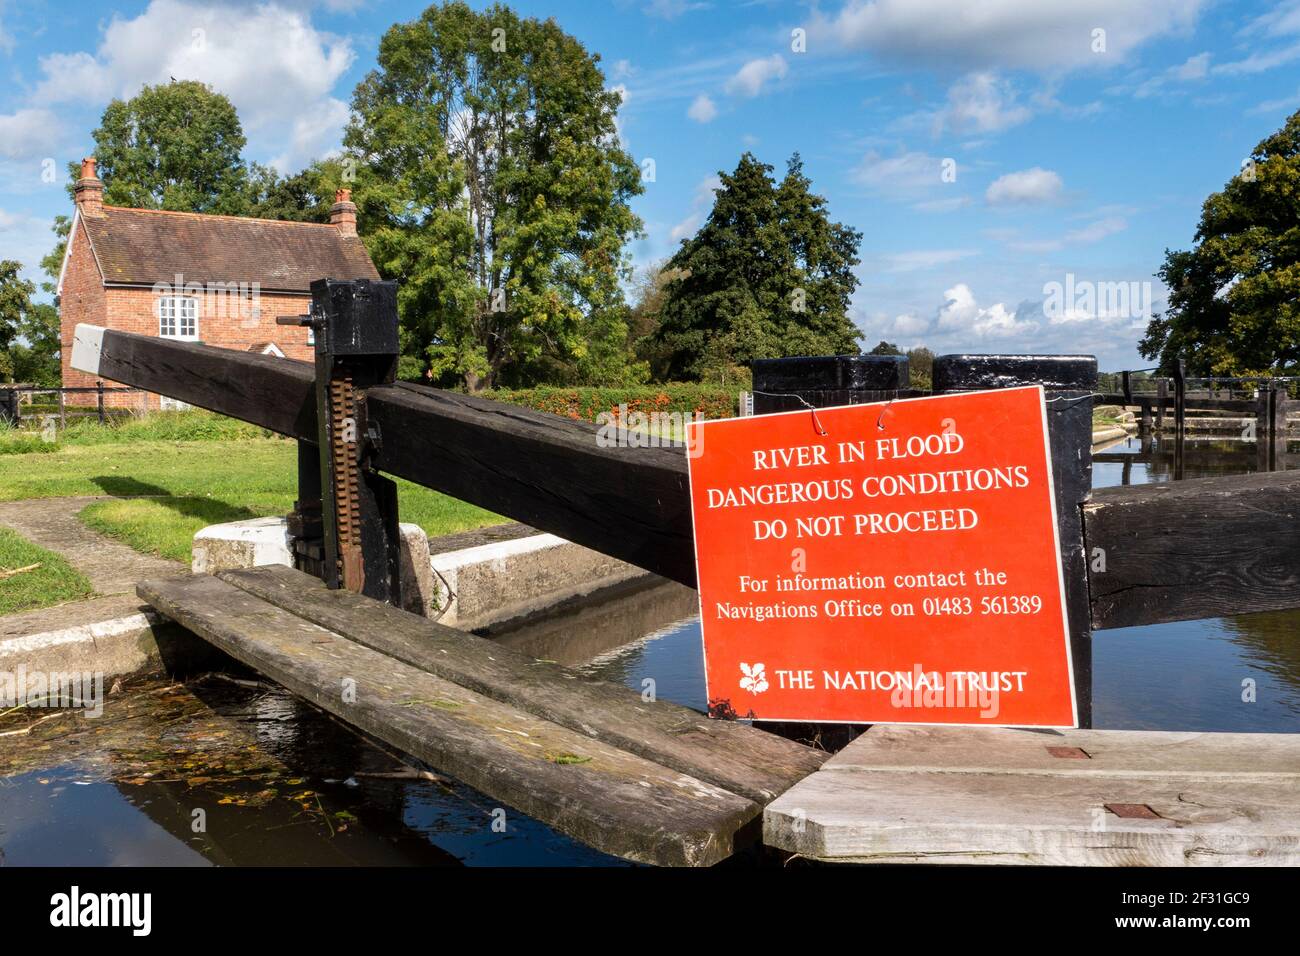 Rivière en crue à l'écluse de River Wey Papercourt avec NT panneau rouge avertissement pas de navigation supplémentaire en raison d'un danger Conditions de la rivière Ripley Surrey Royaume-Uni Banque D'Images